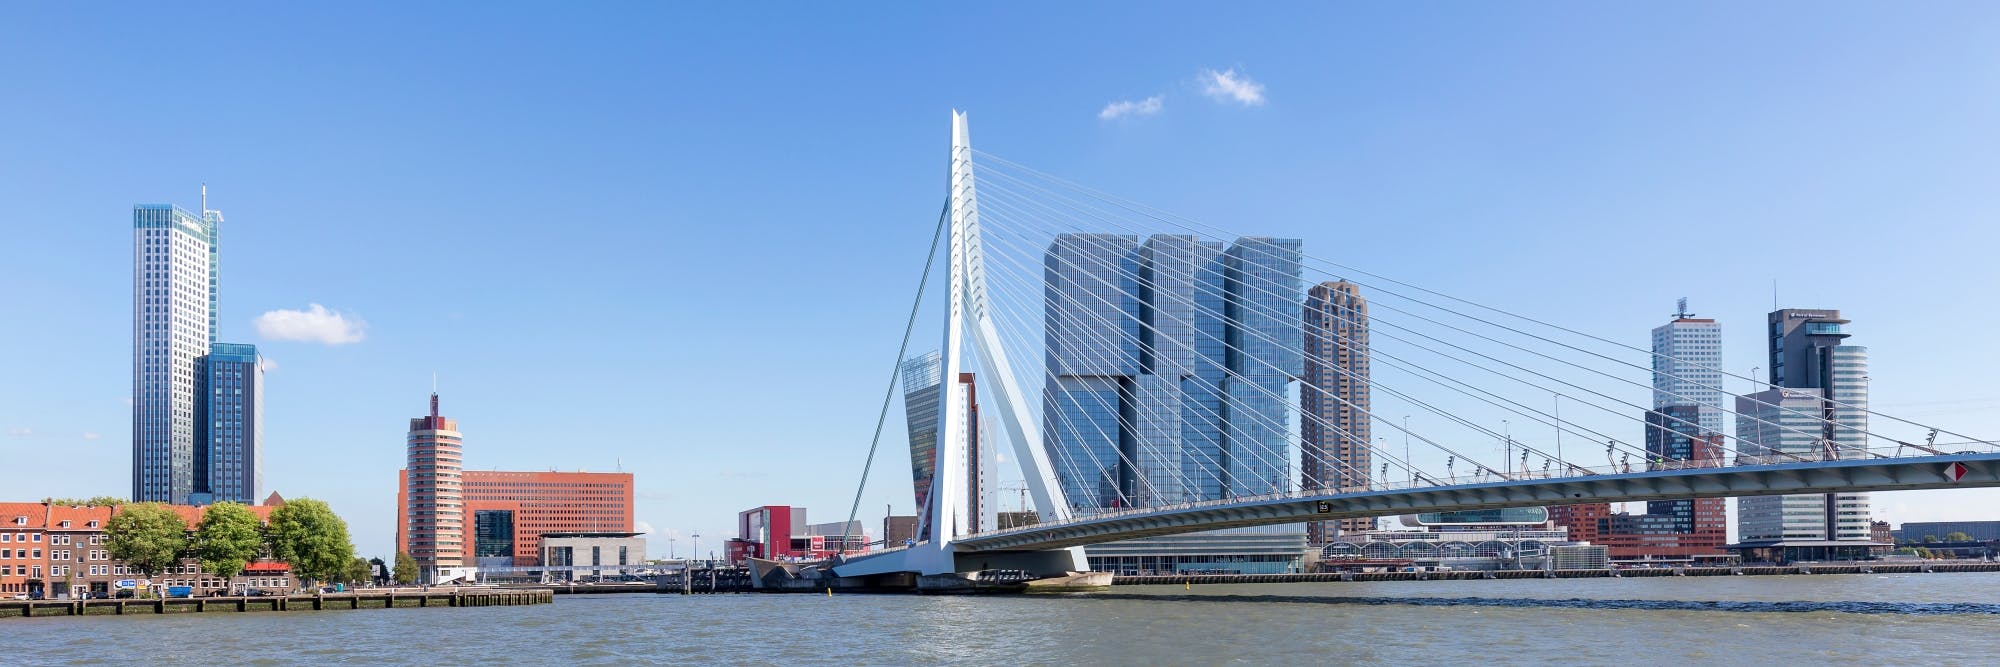 Zelfstandige wandeltocht met audiogids door Rotterdam